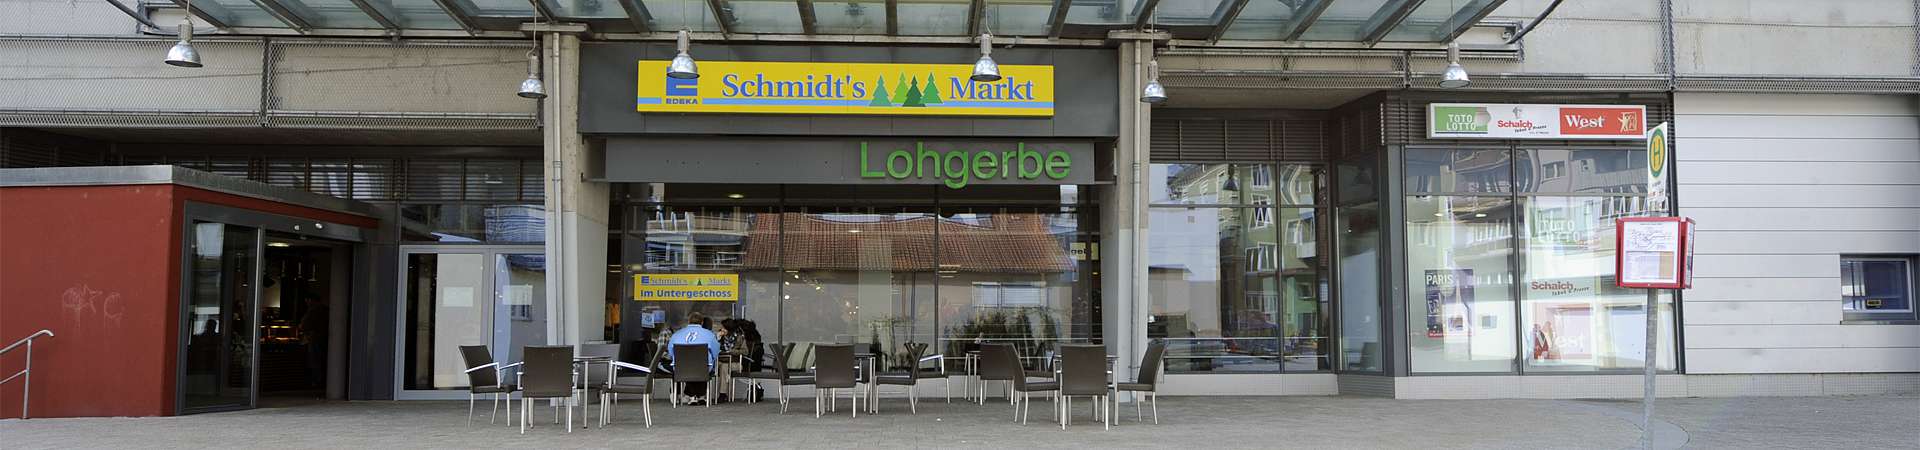 Markt Bad Säckingen Lohgerbe/ Schmidt´s Märkte / Südschwarzwald